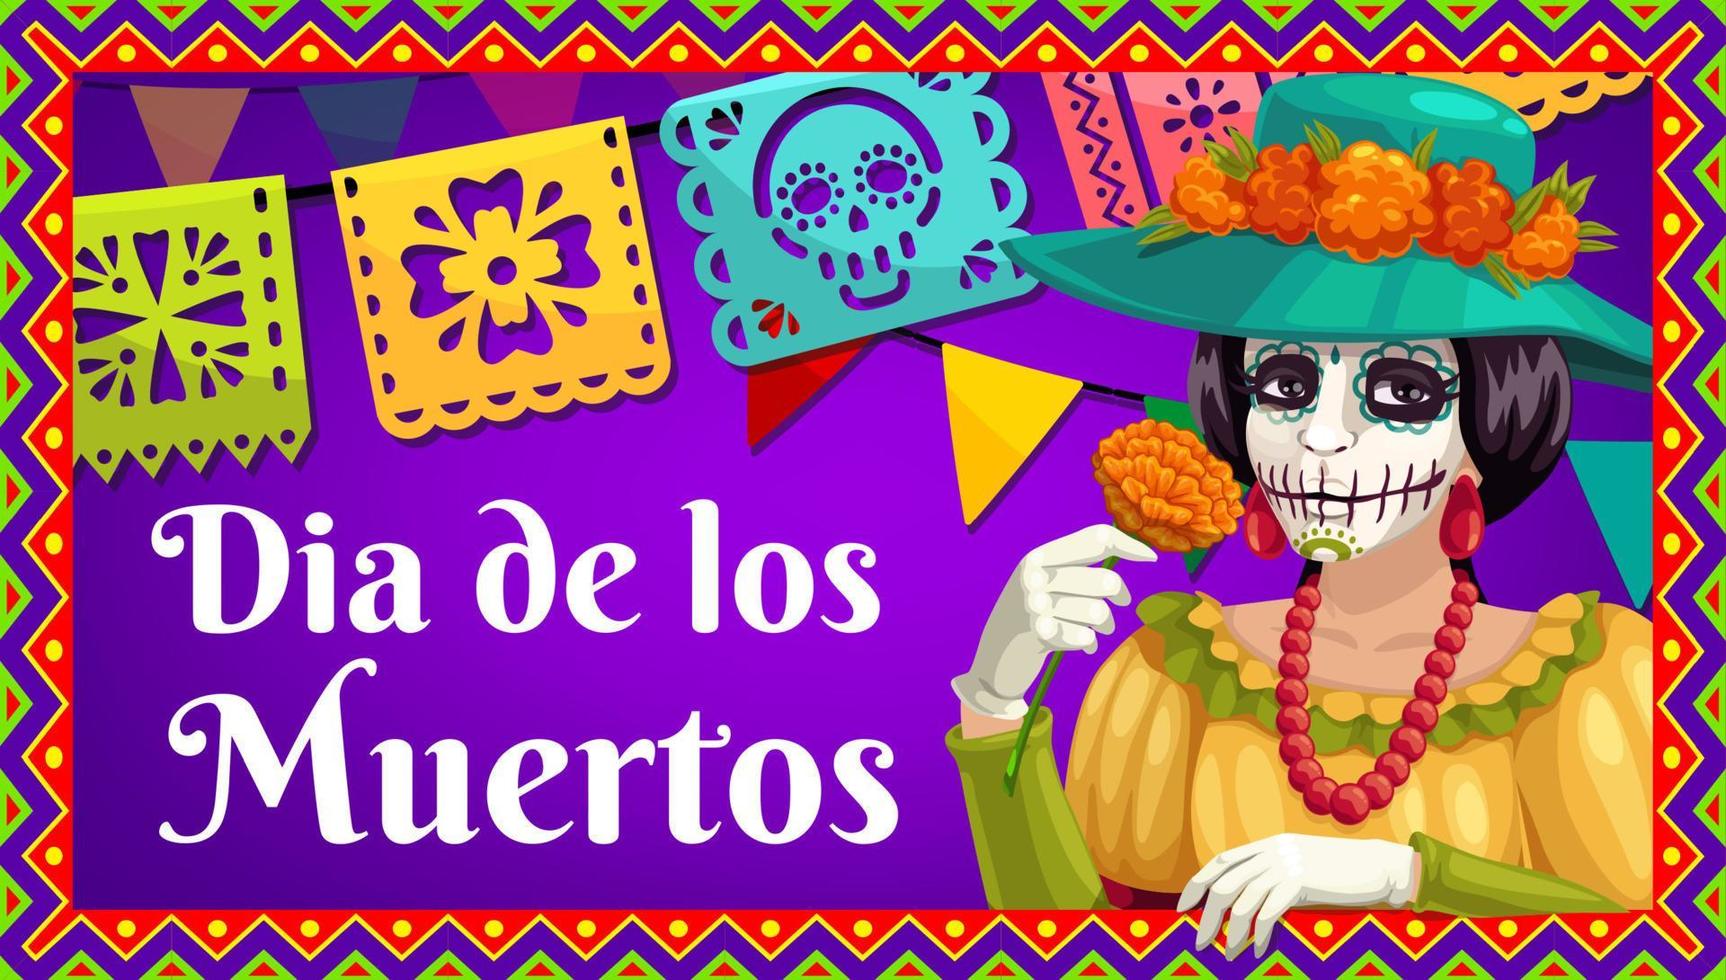 Dia de los Muertos Catrina with marigold and flags vector